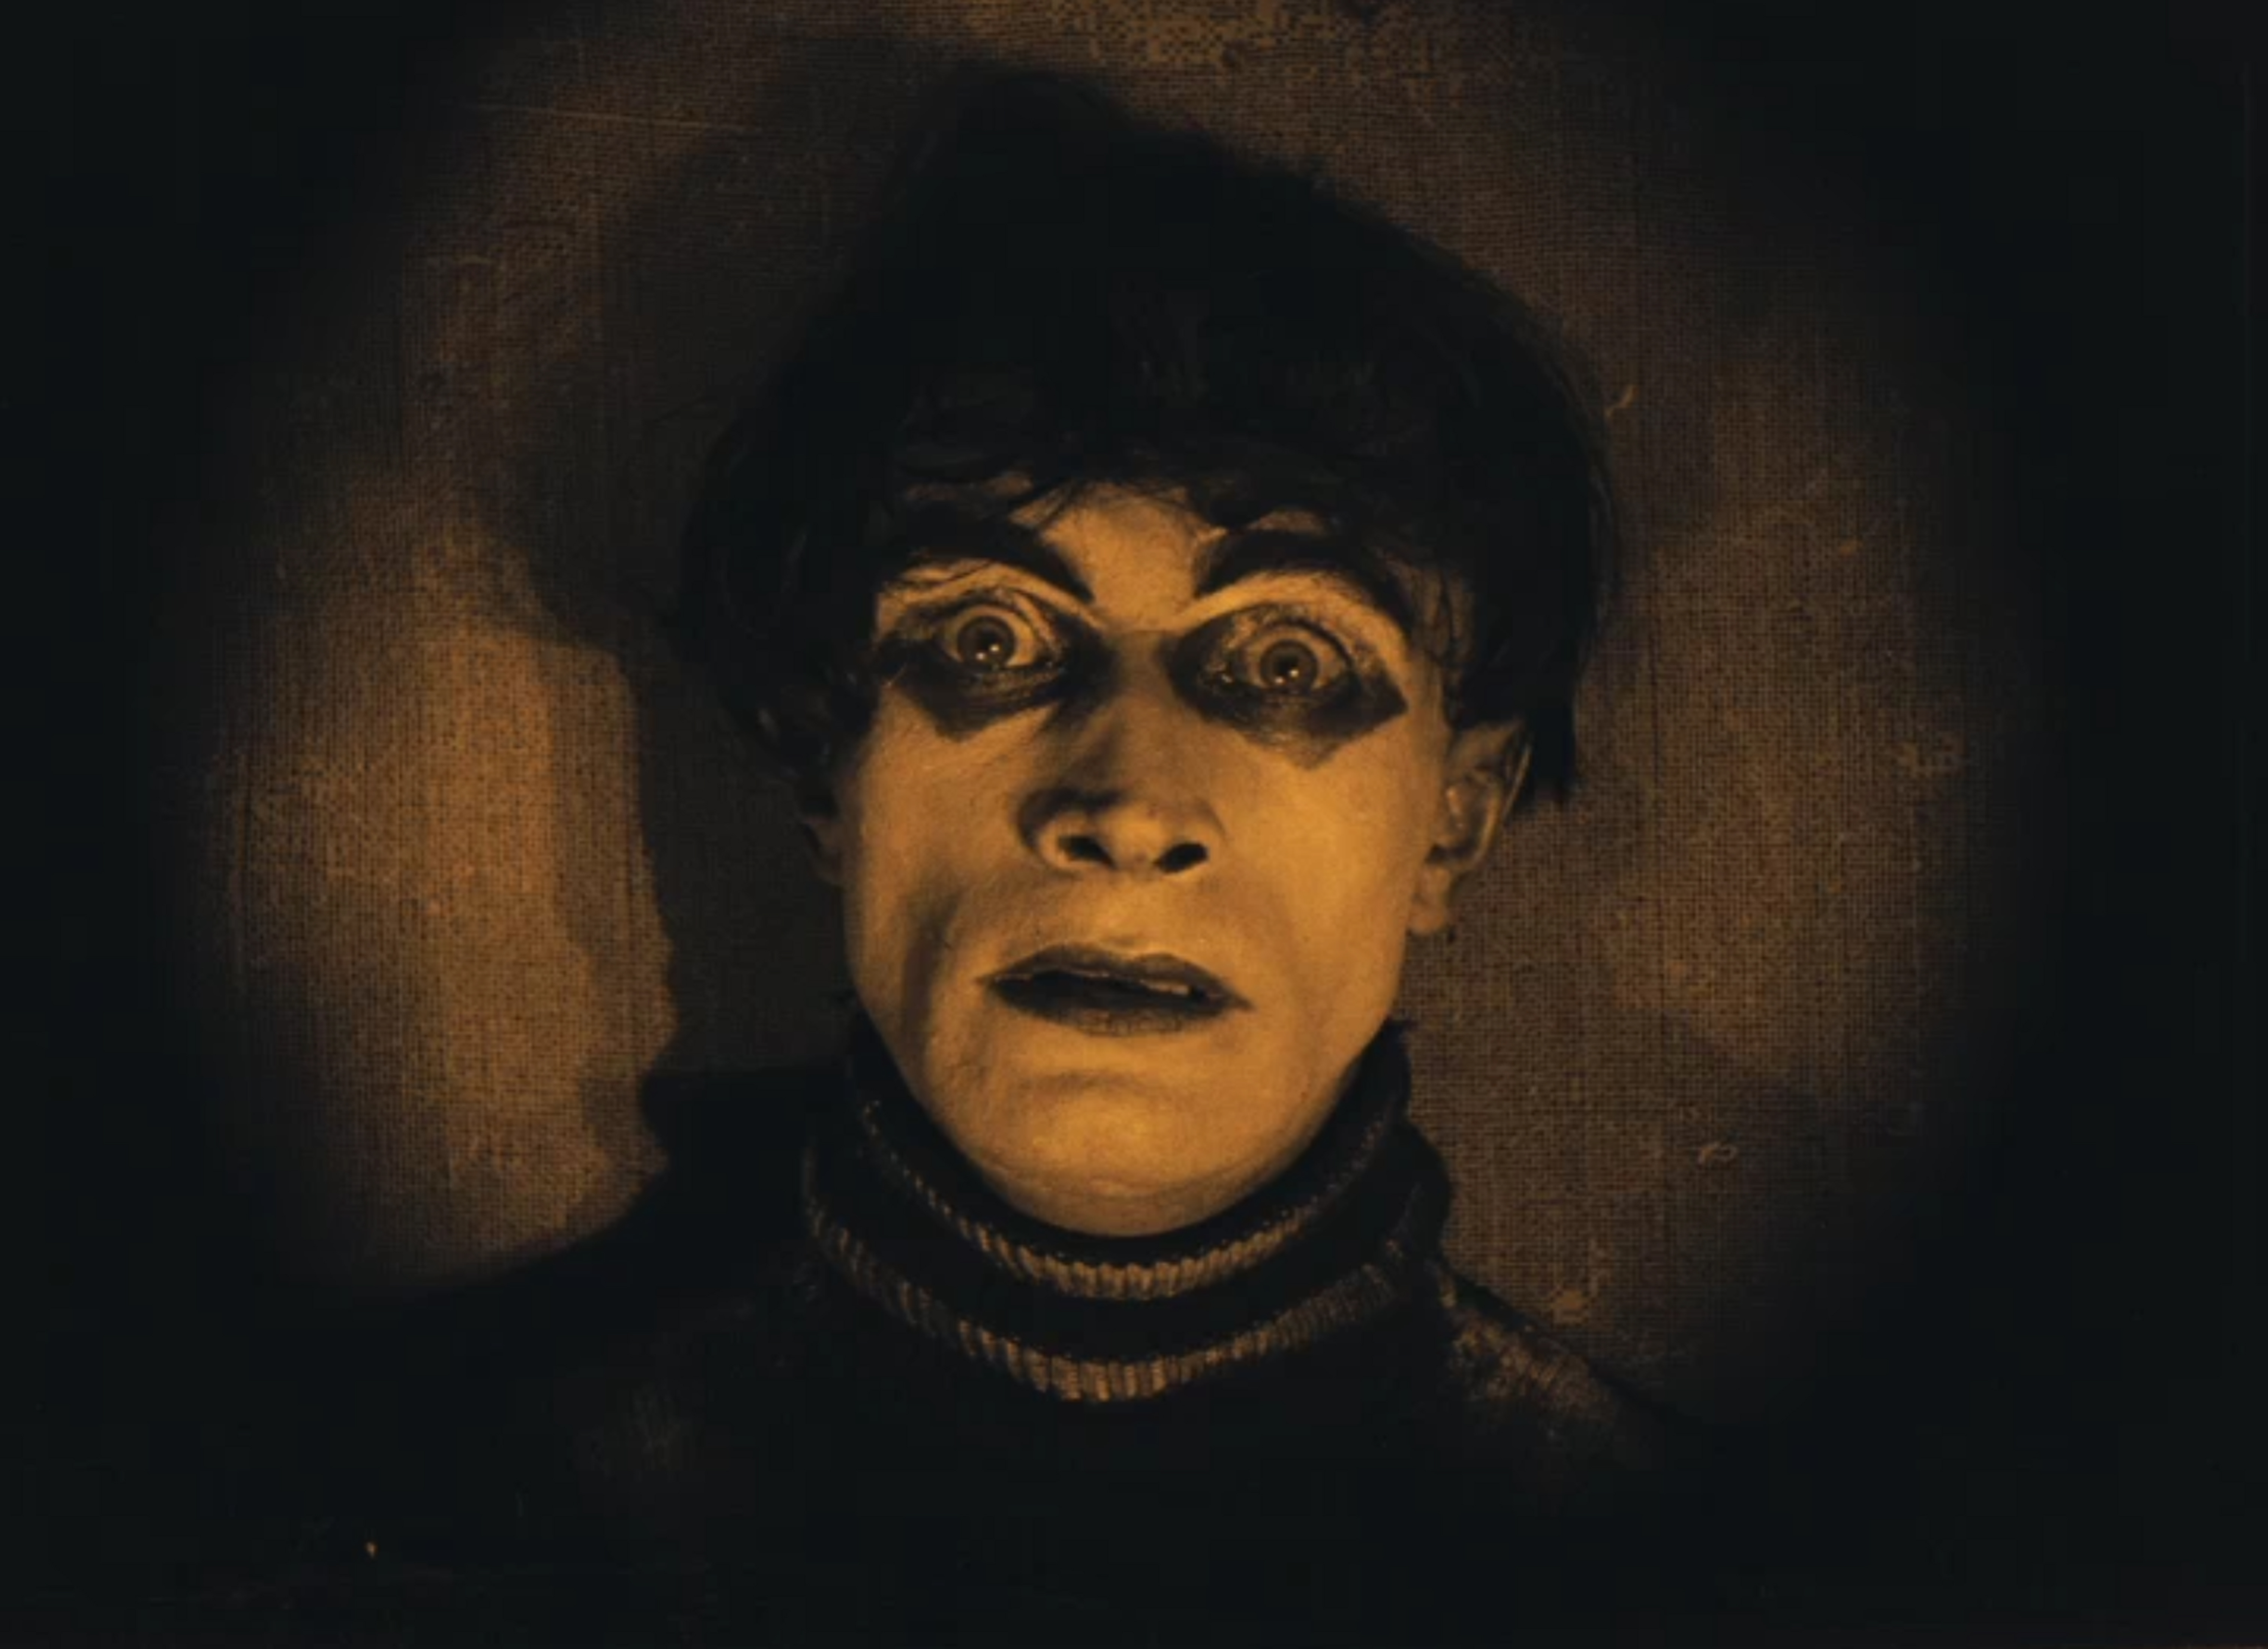 Stummfilmkino | Das Cabinet des Dr. Caligari